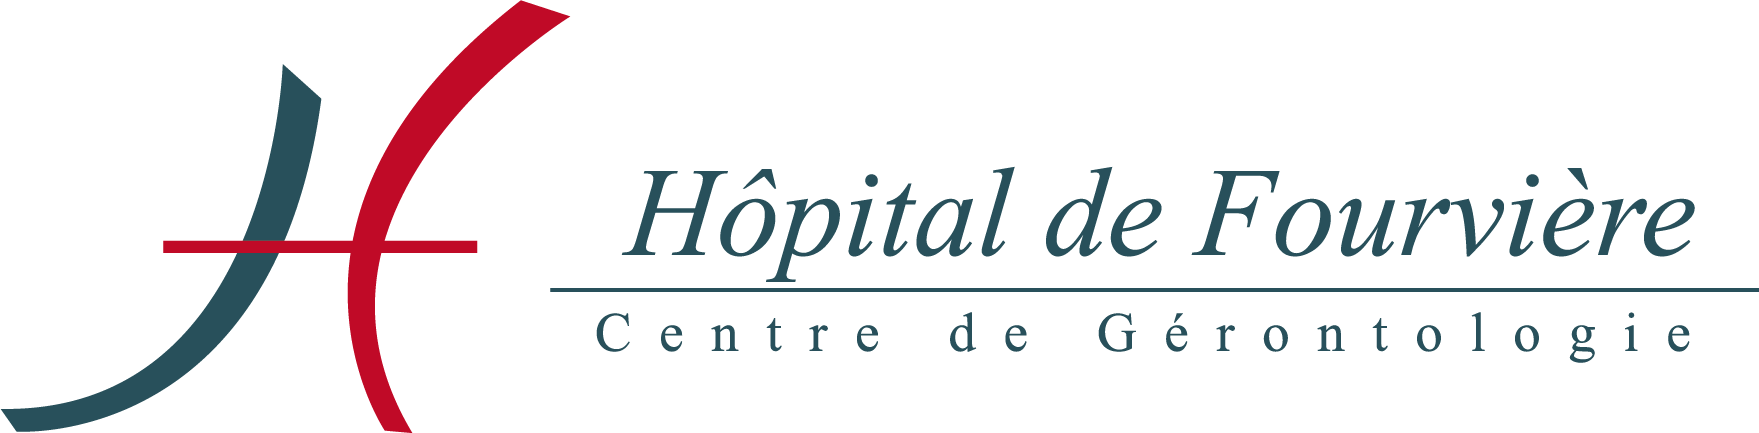 Hôpital de Fourvière